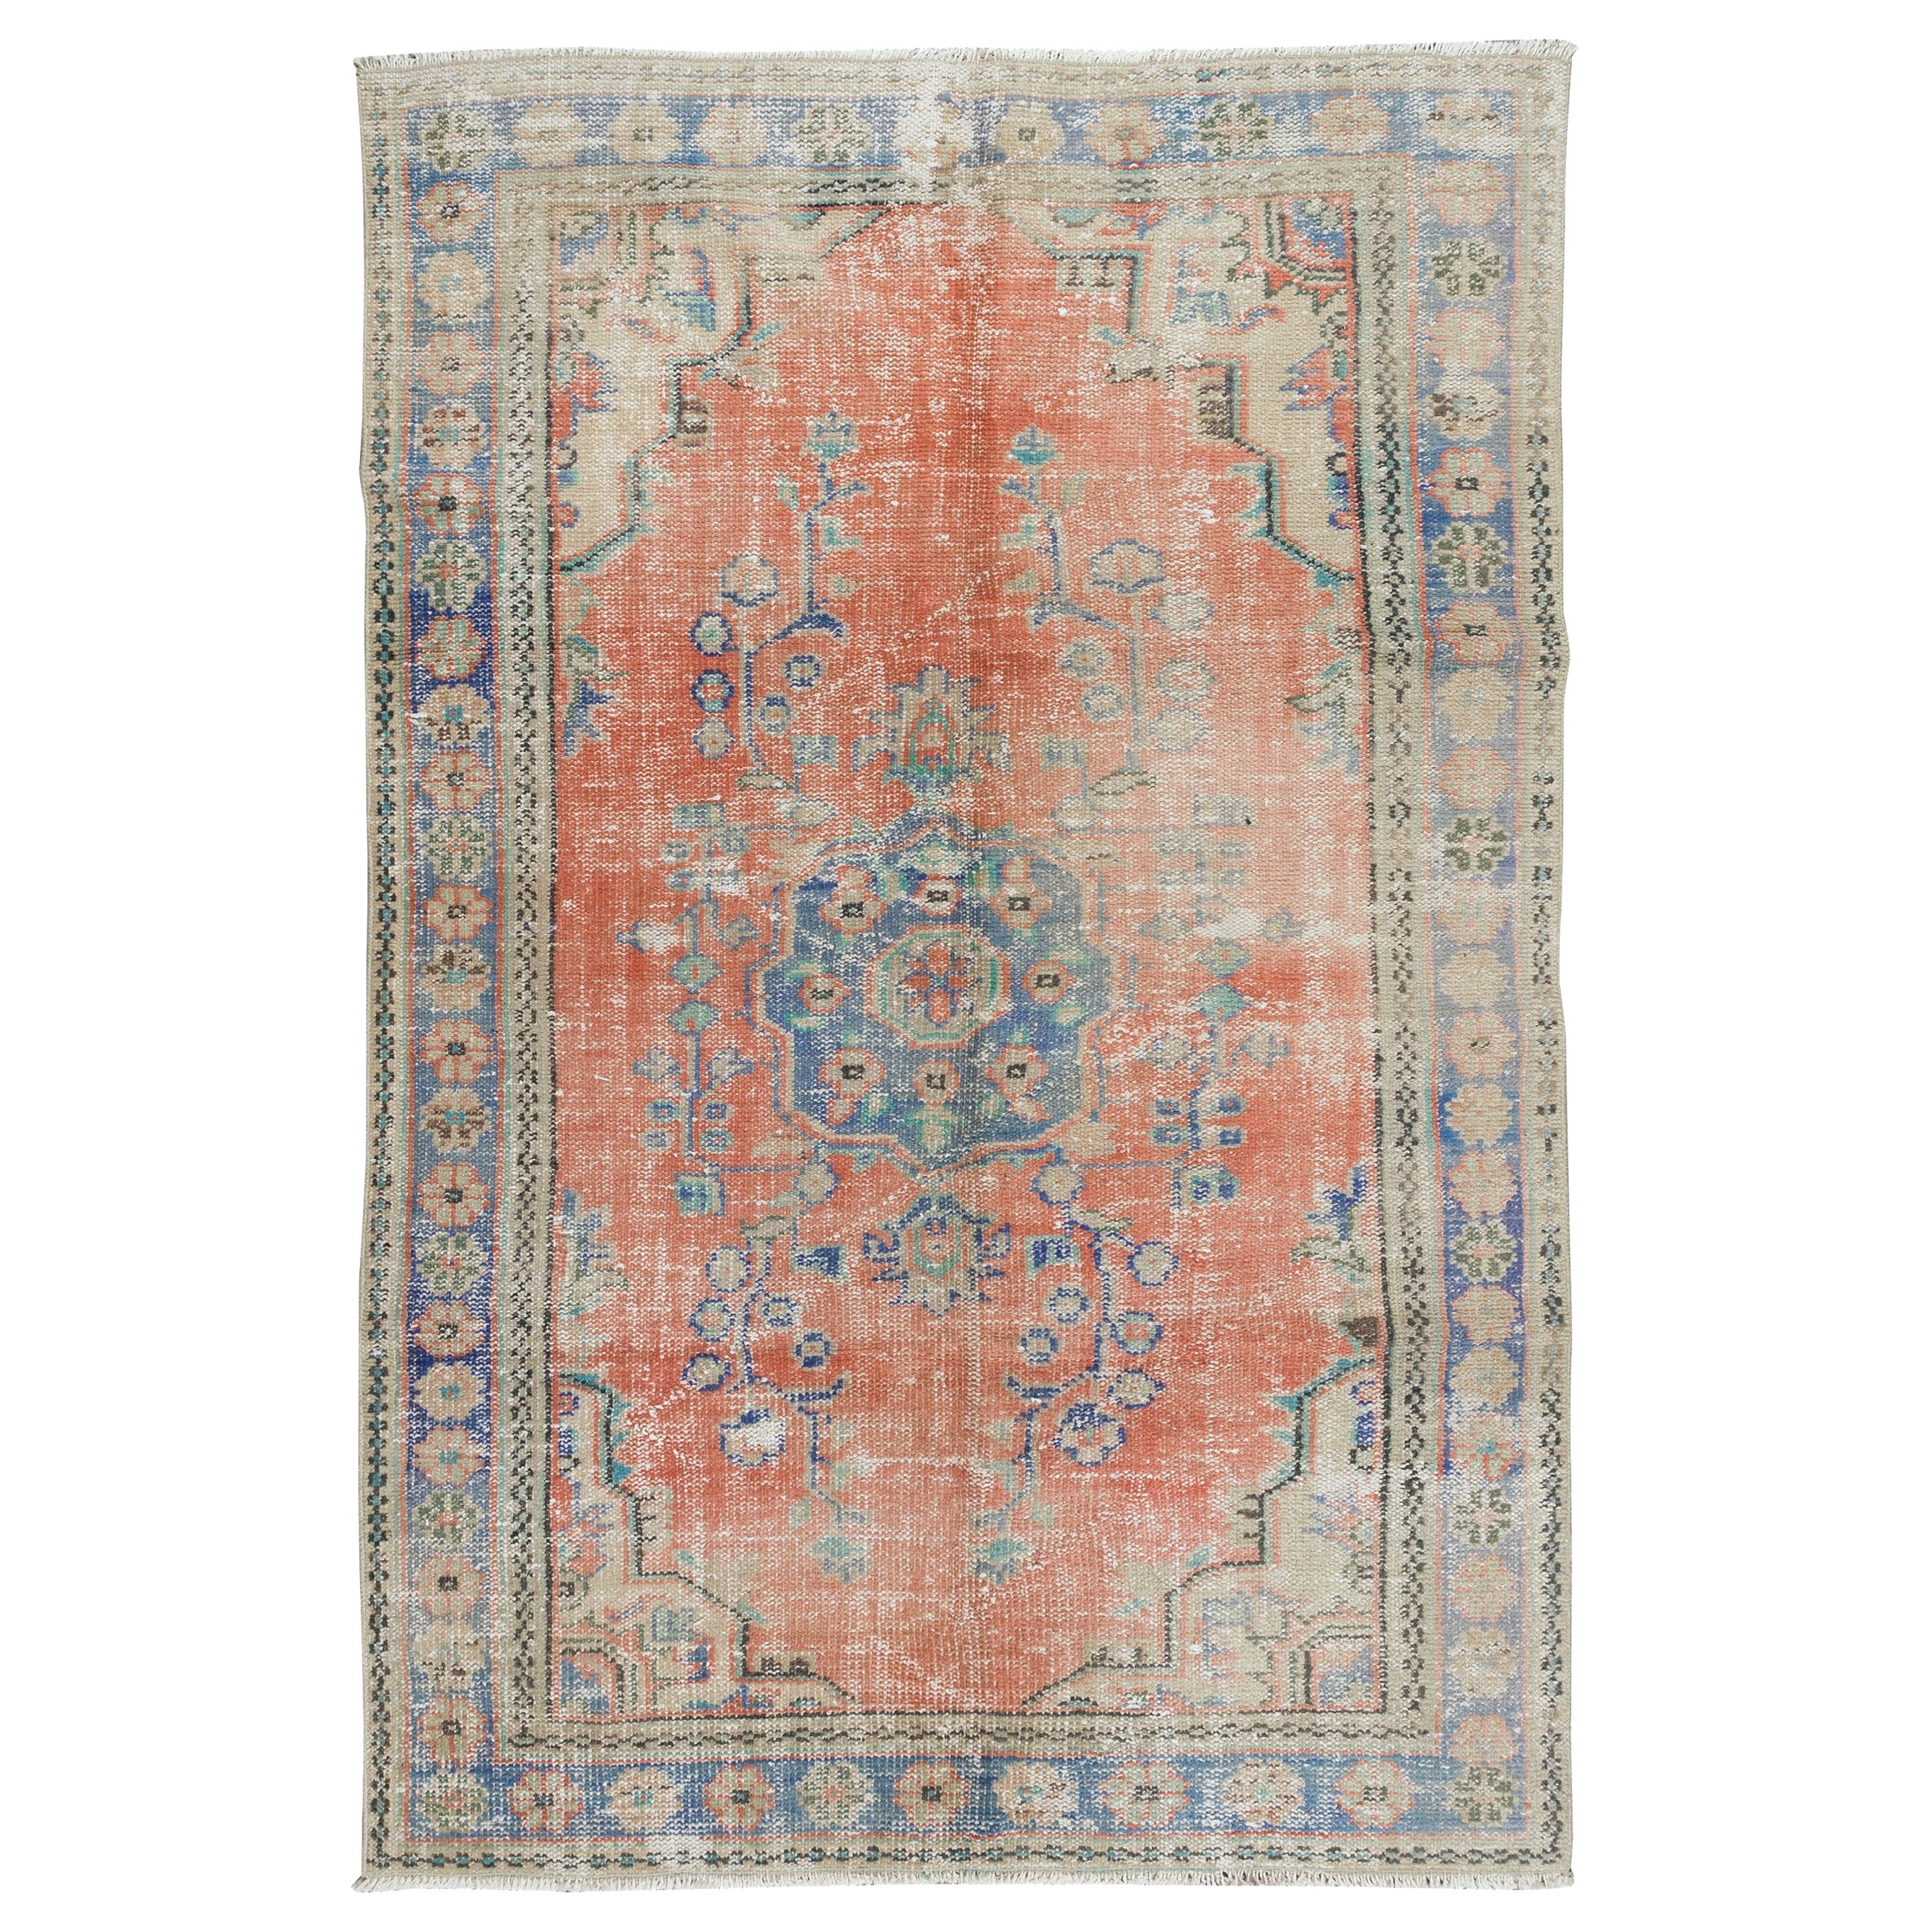 Handgeknüpfter türkischer Vintage-Teppich in Weichrot, Dunkelblau & Beige, 5,5x9 Ft